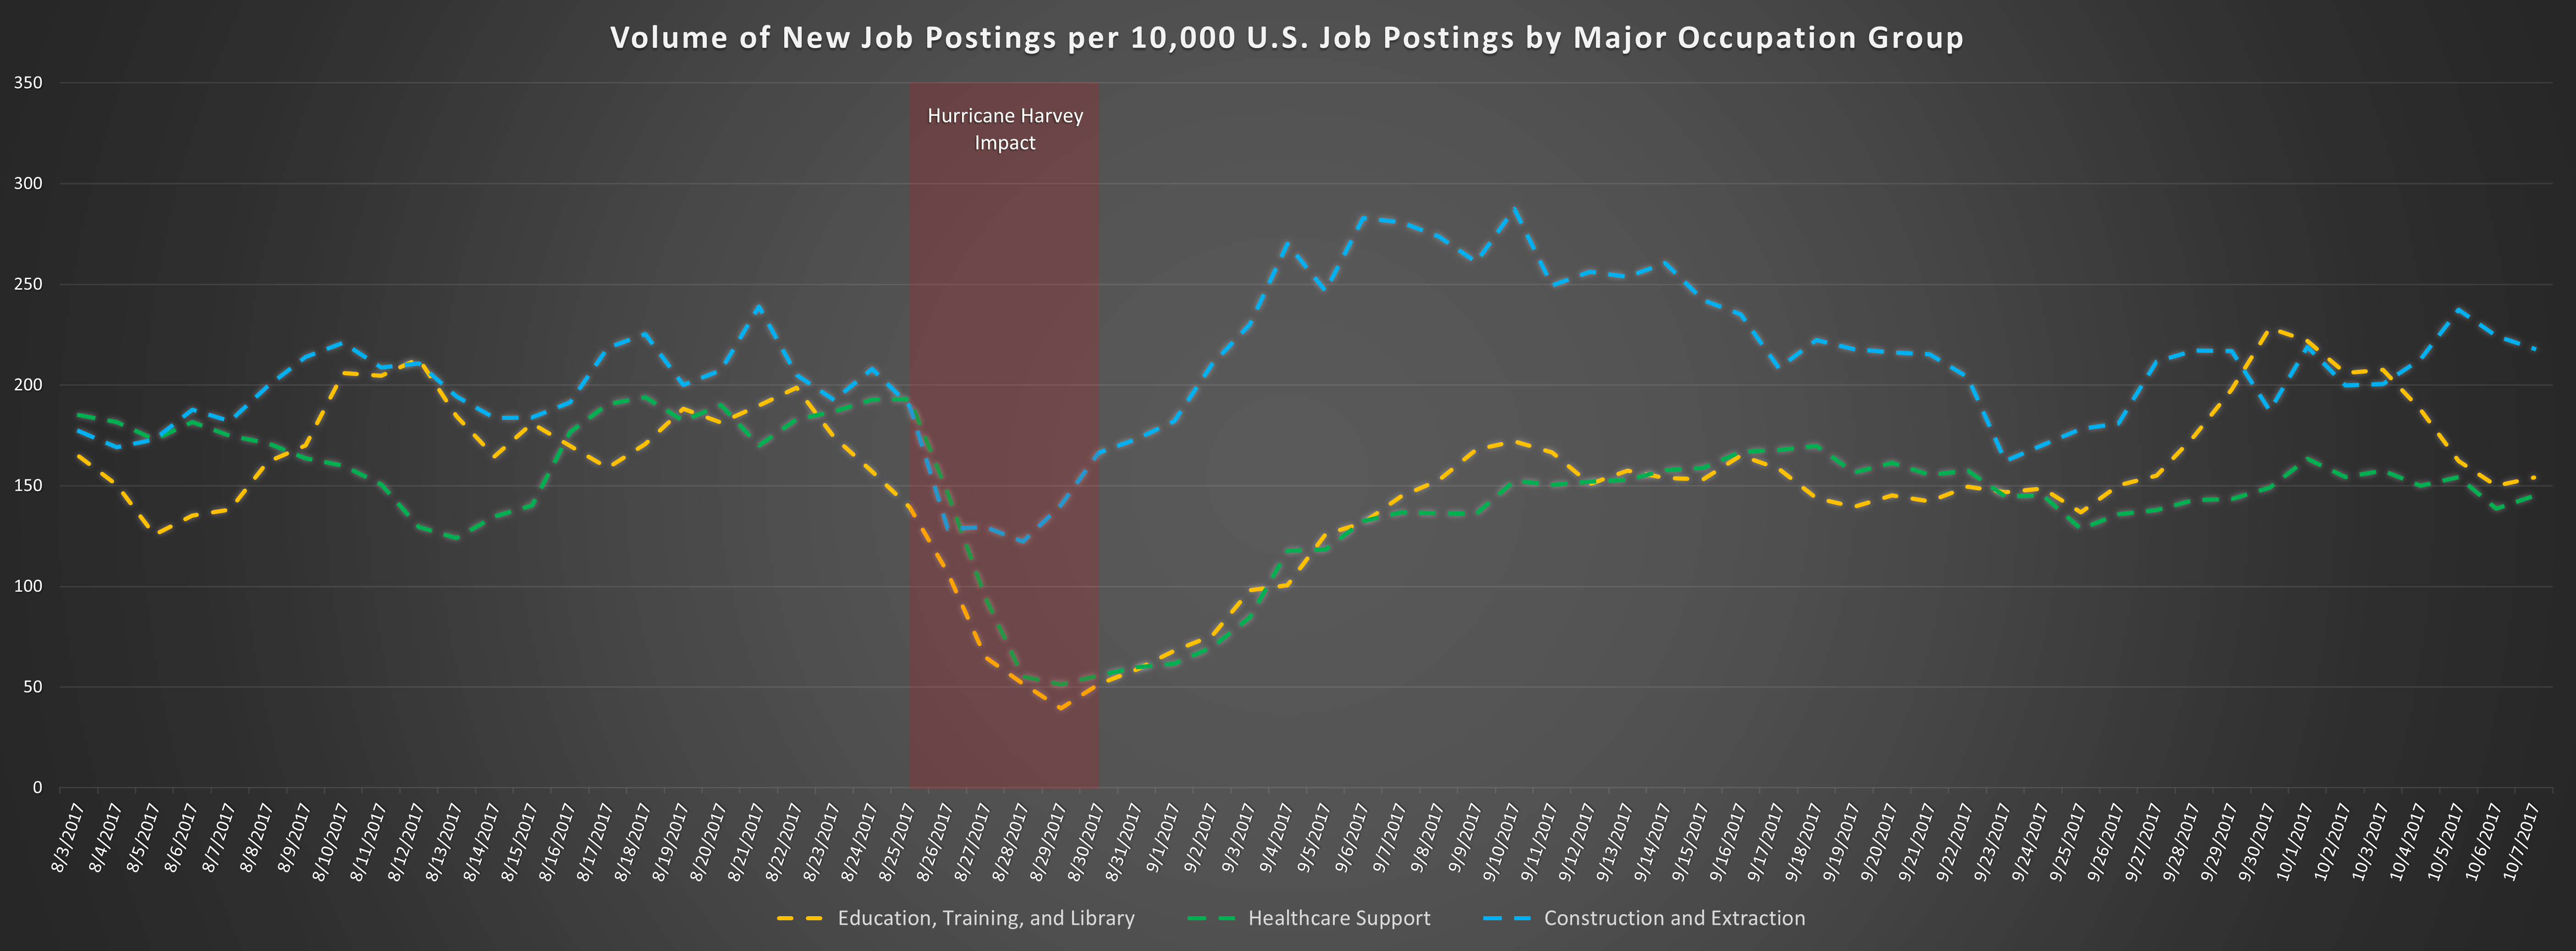 Volume of New Job Postings per 10,000 U.S. Job Postings by Major Occupation Group